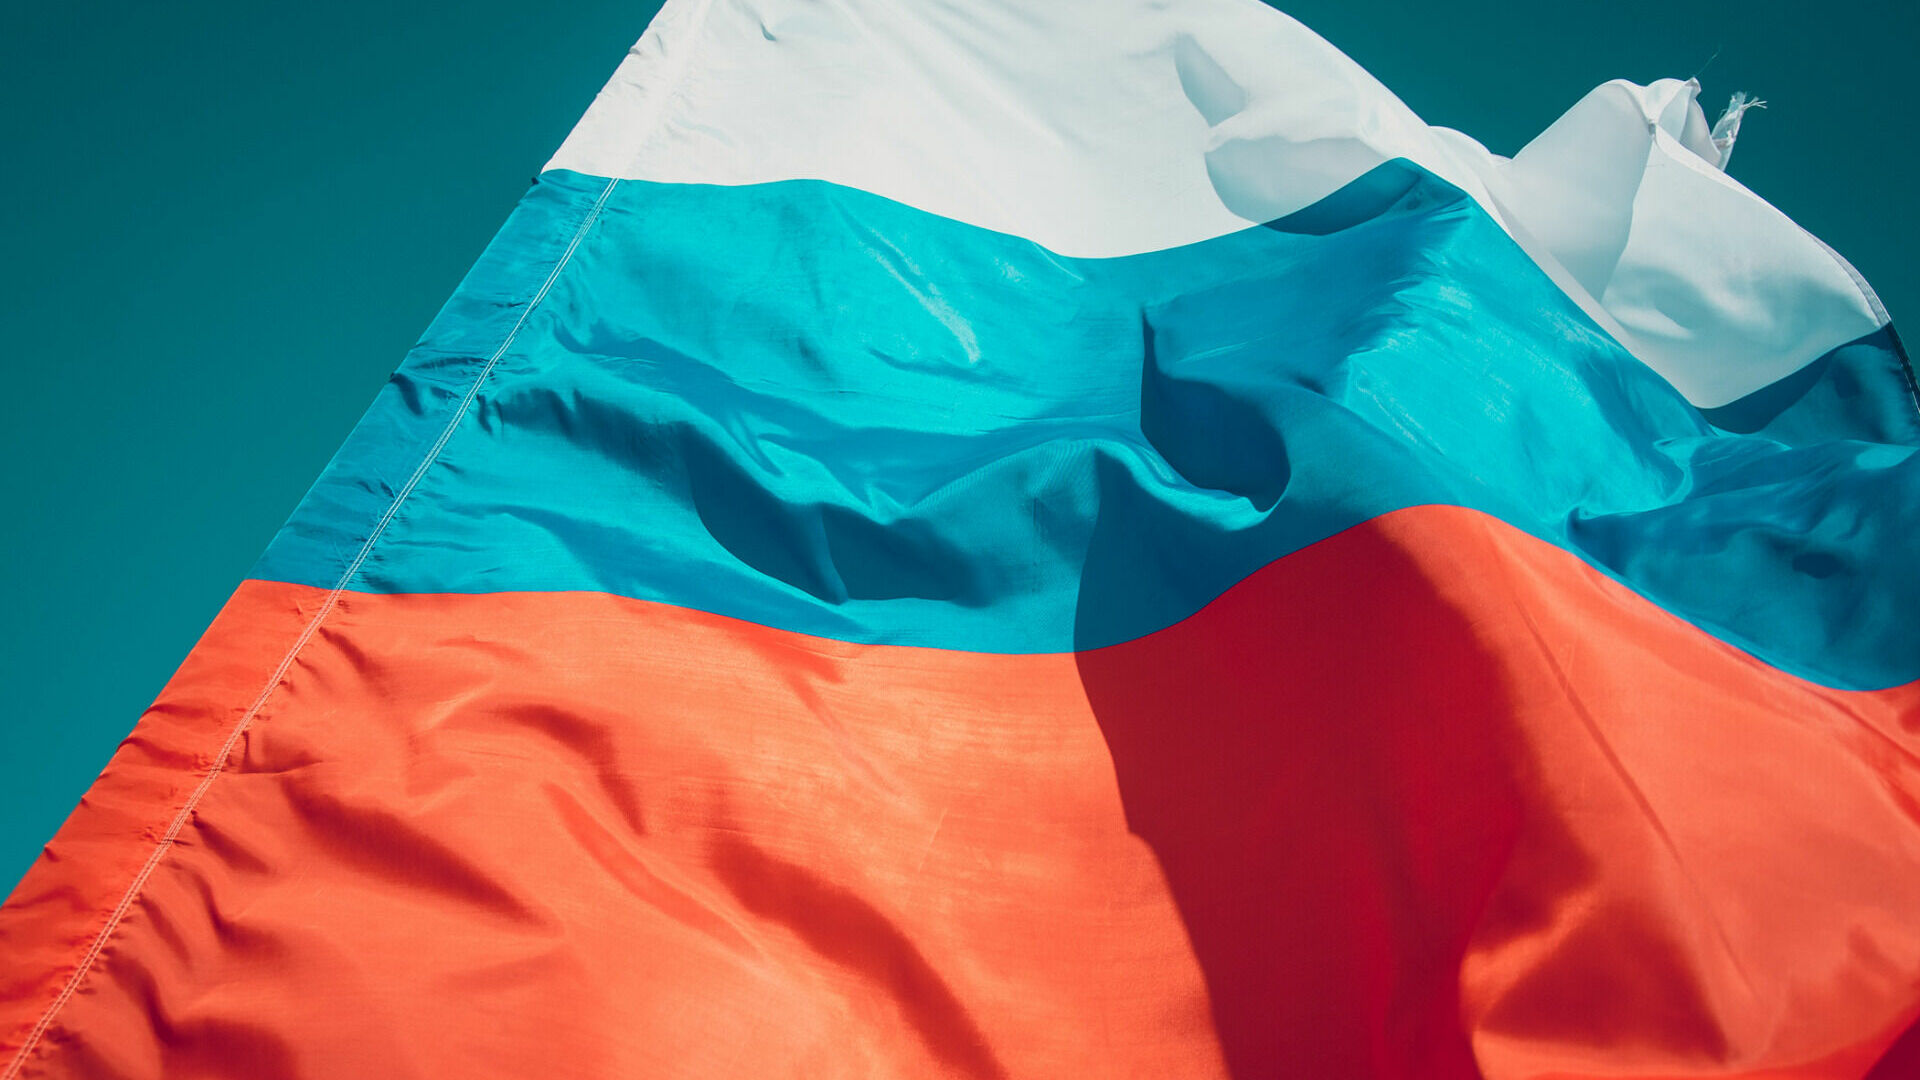 Директор гимназии в ХМАО перепутала цвета в российском флаге